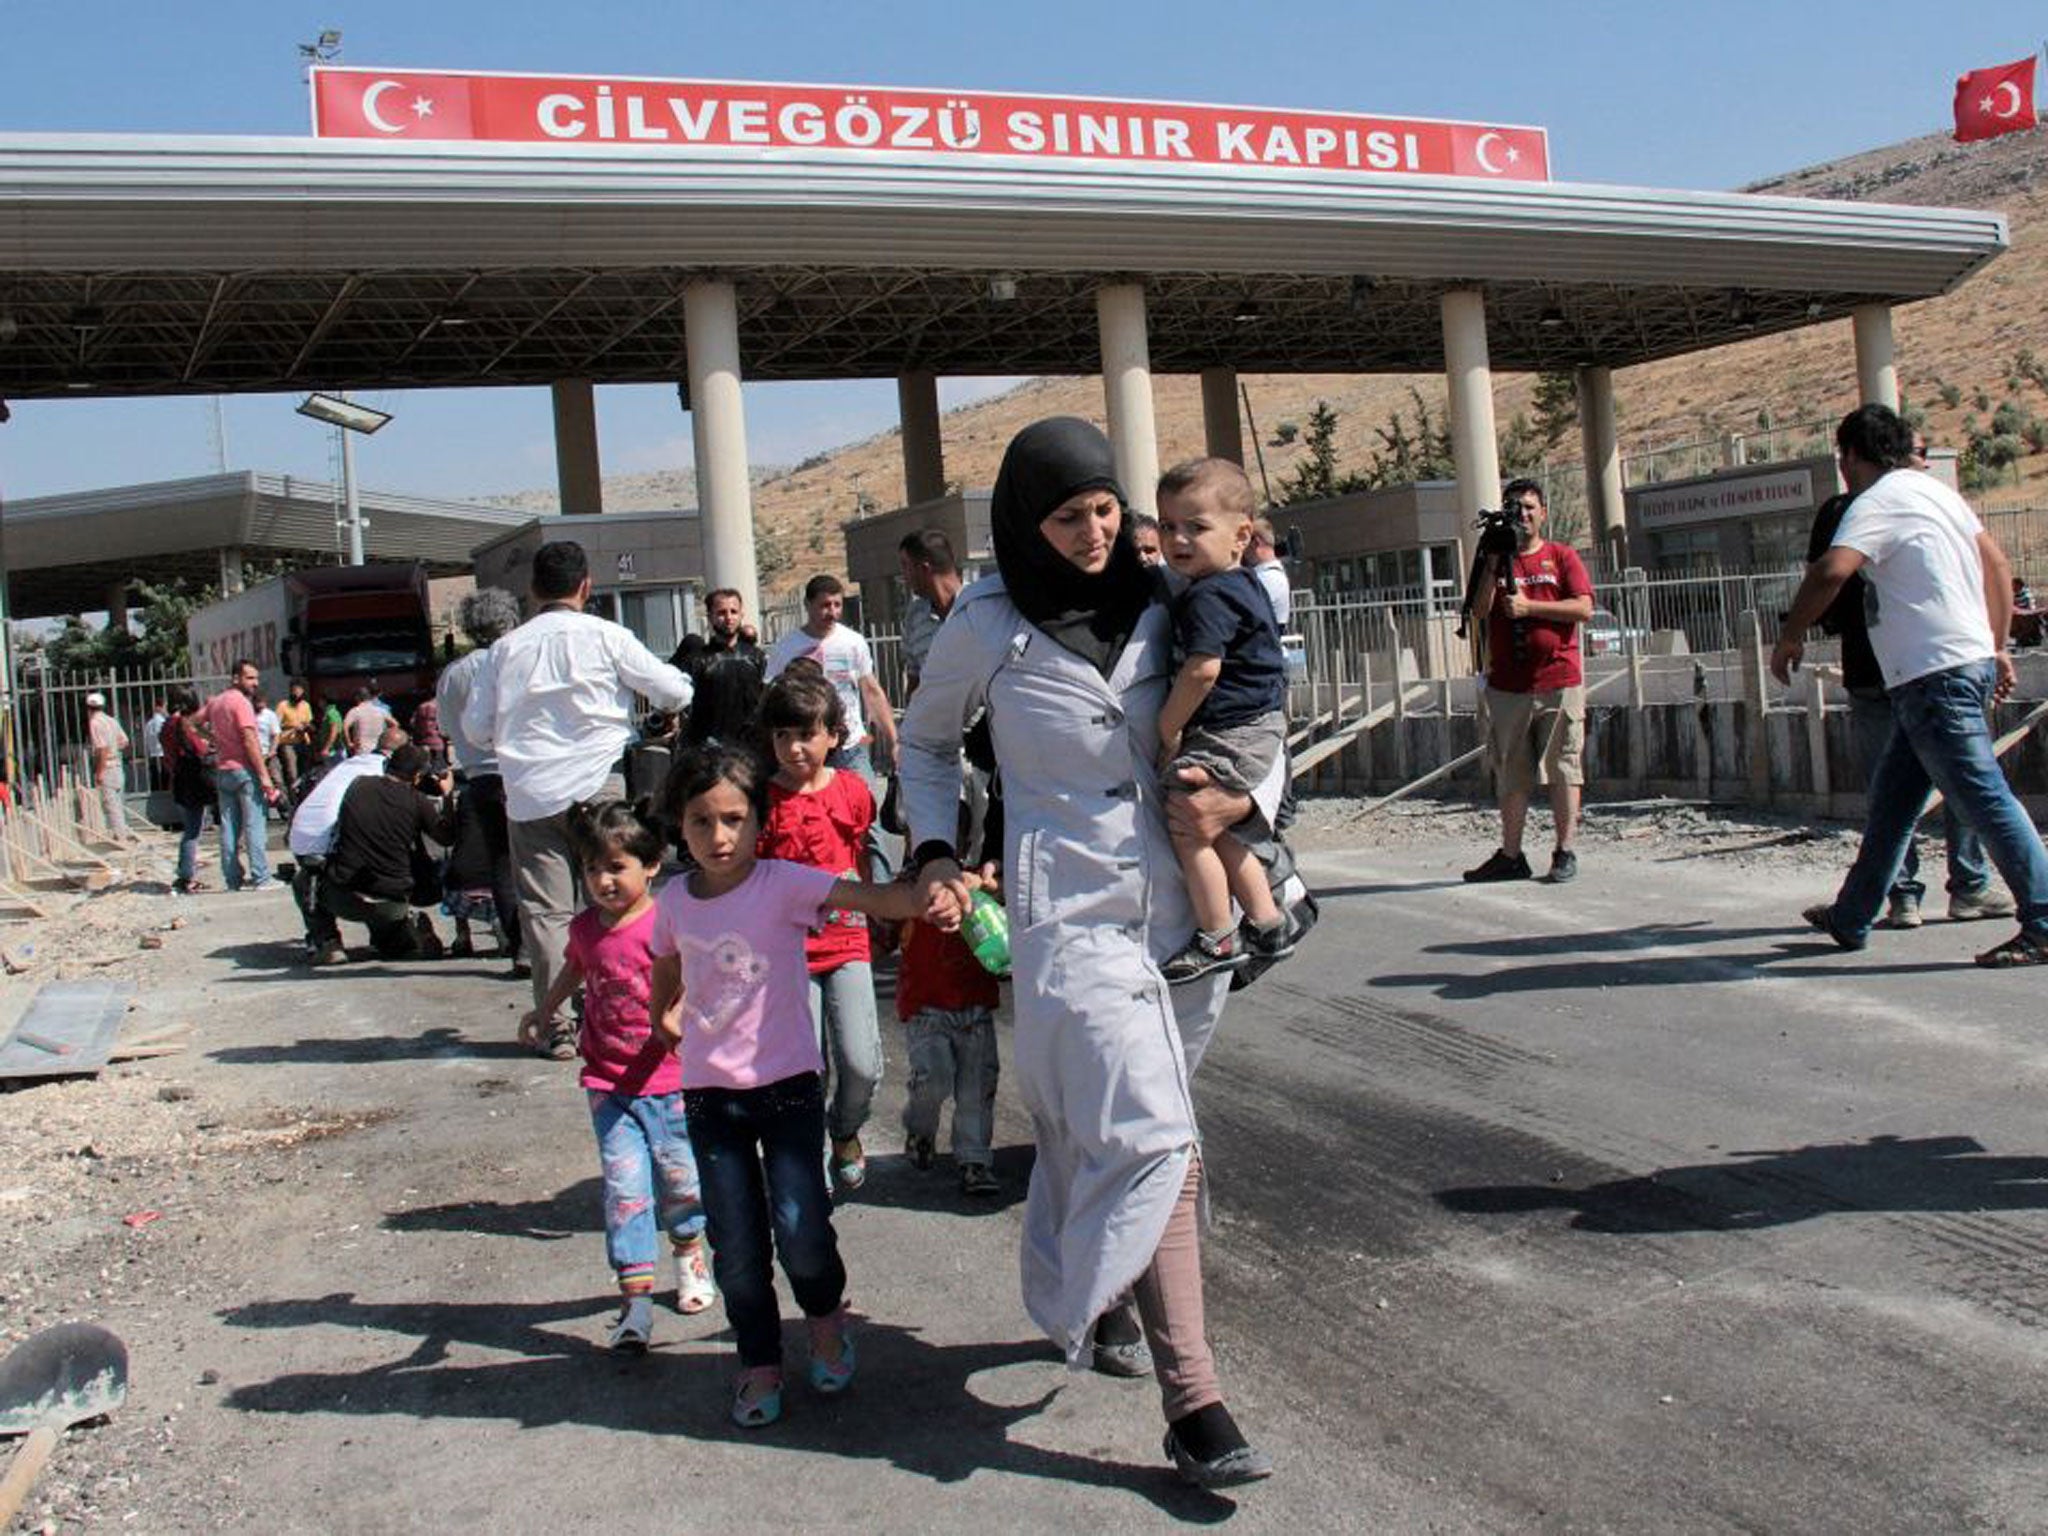 Syrian refugees crossing at the Cilvegozu border gate in Reyhanli, Hatay, Turkey